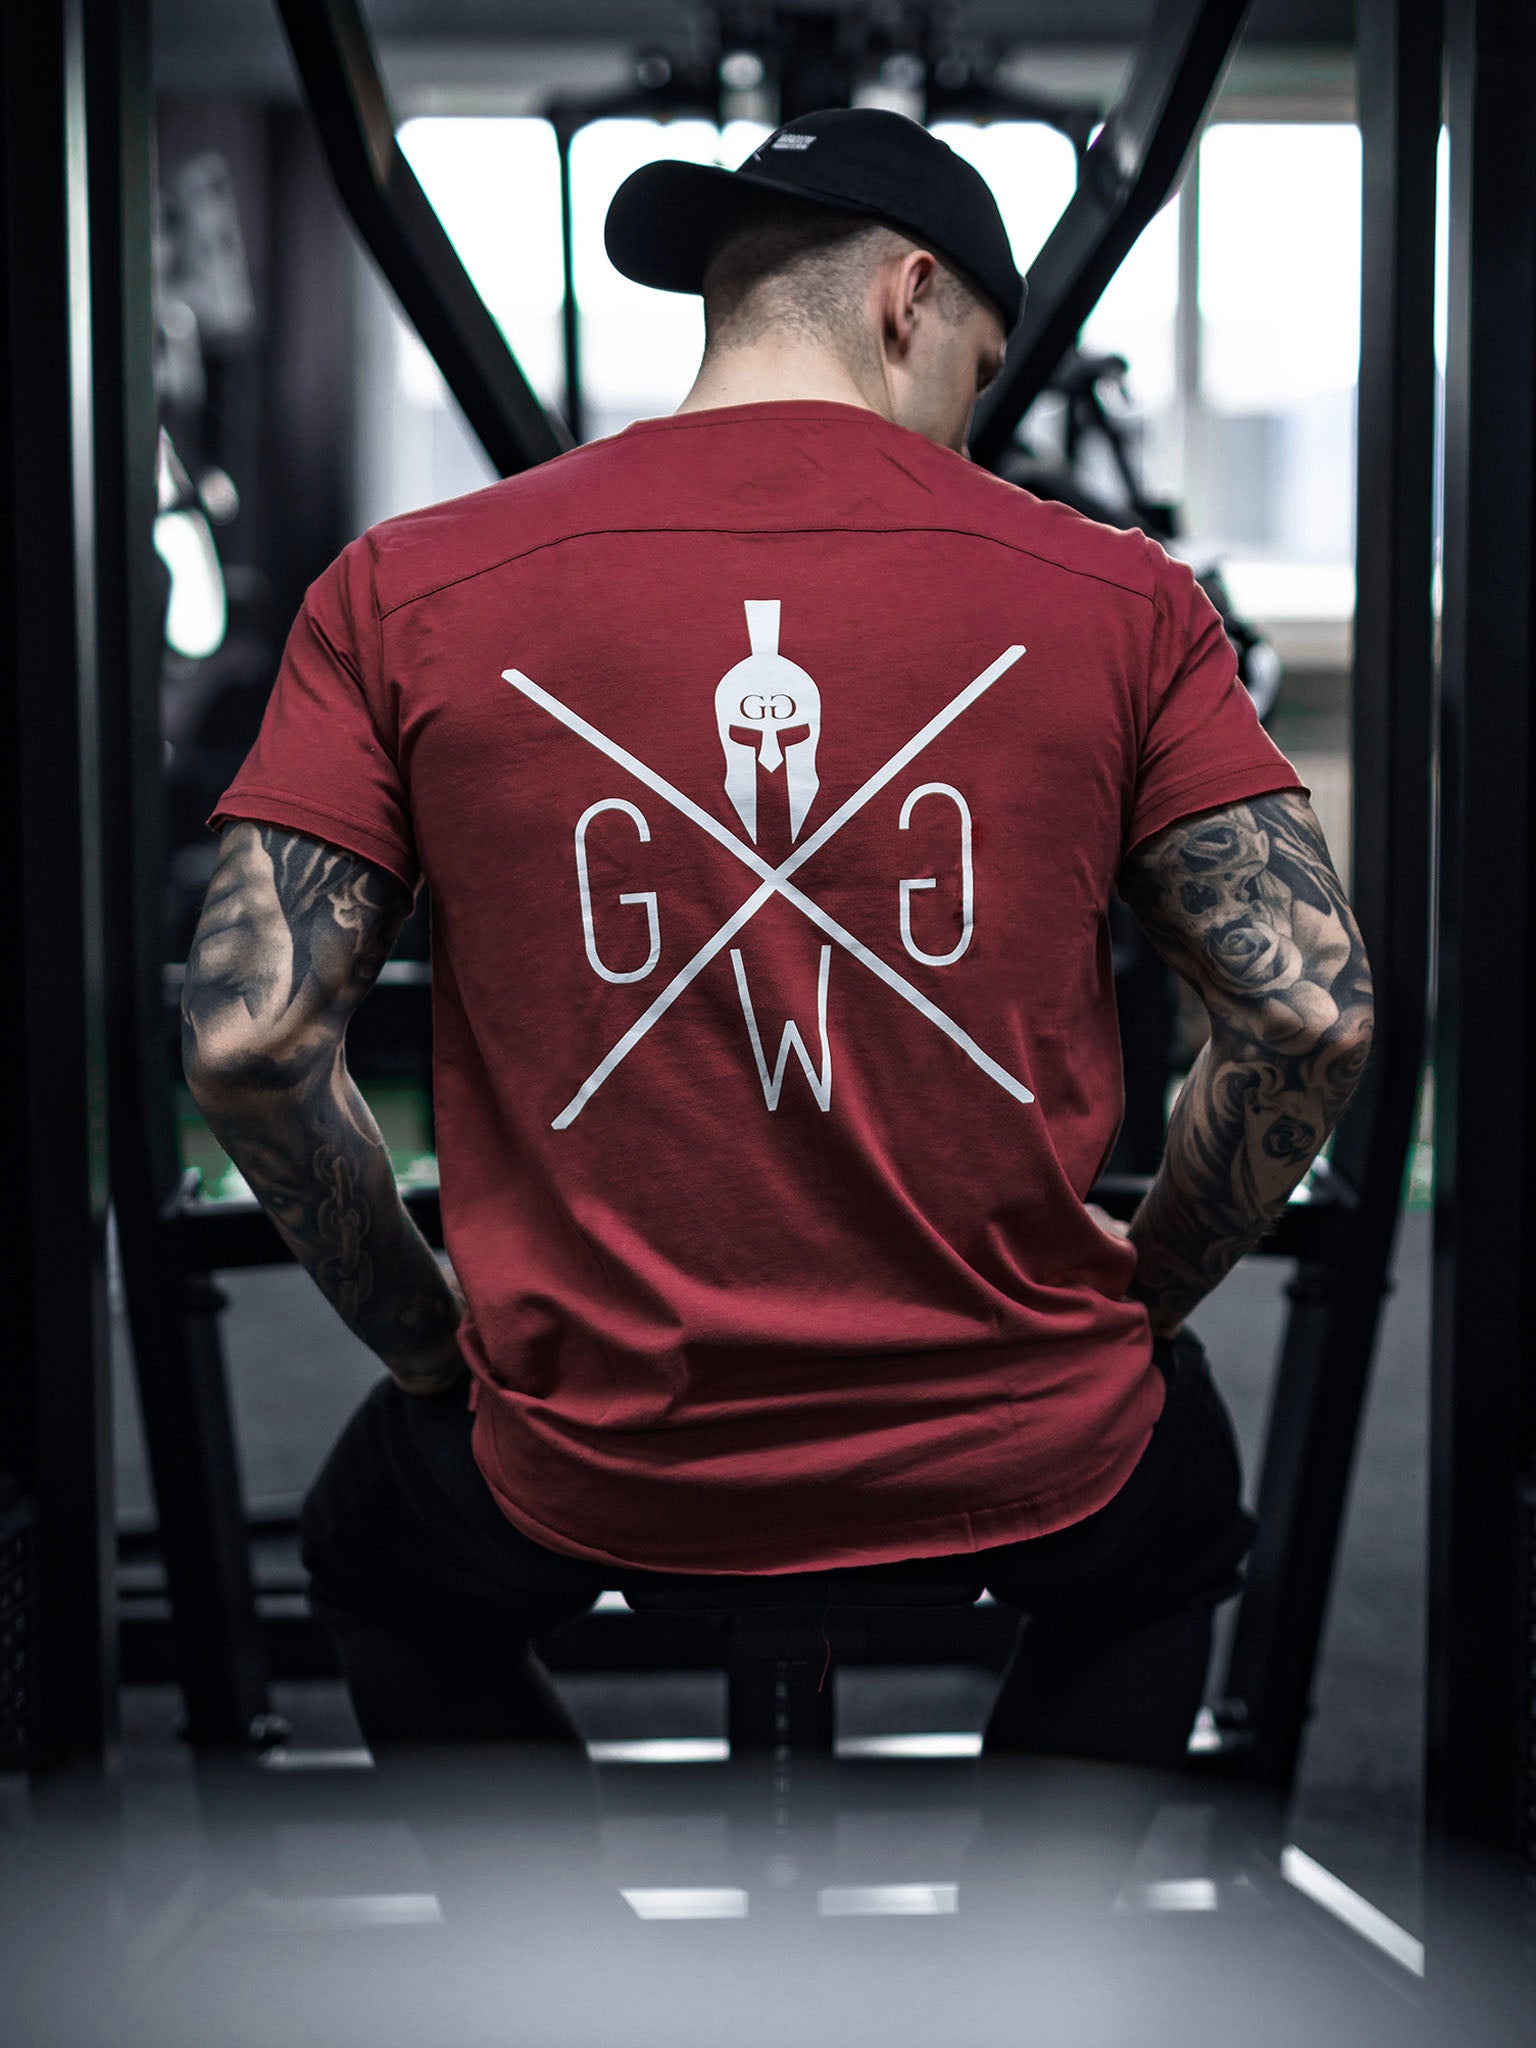 Stilvolles und bequemes bordeauxfarbenes Gym T-Shirt von Gym Generation, ein echtes Statement-Piece.